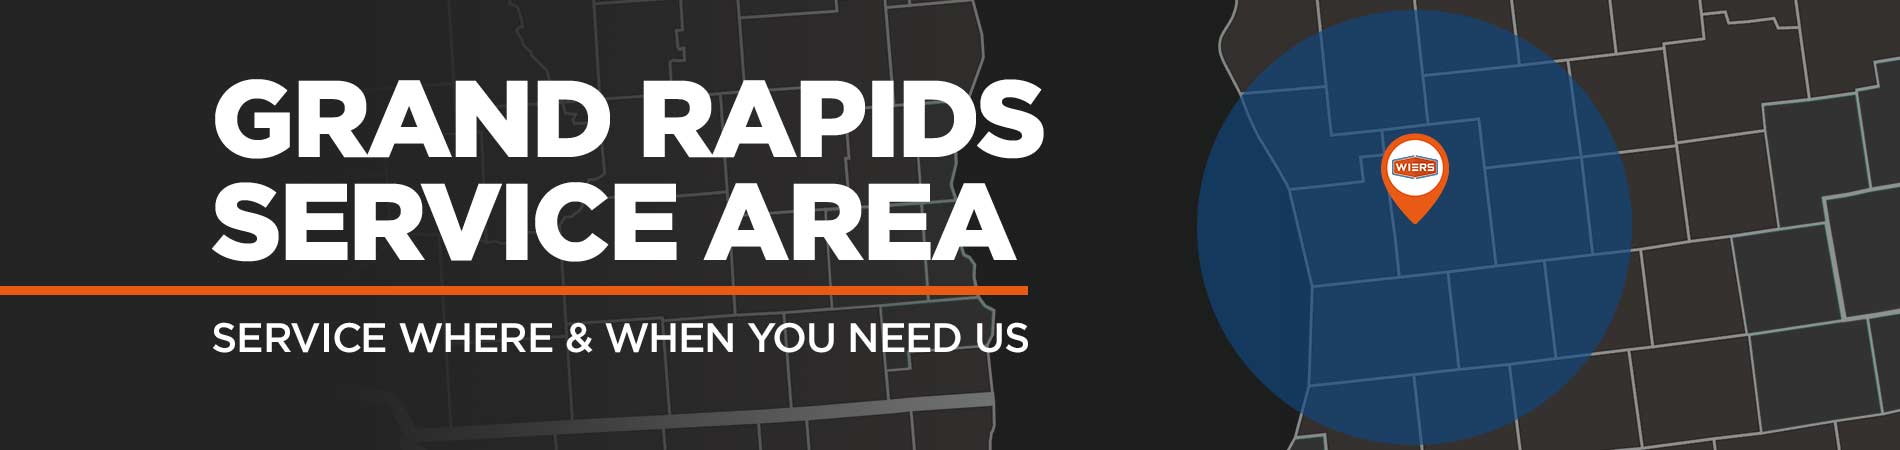 Grand Rapids Service Area